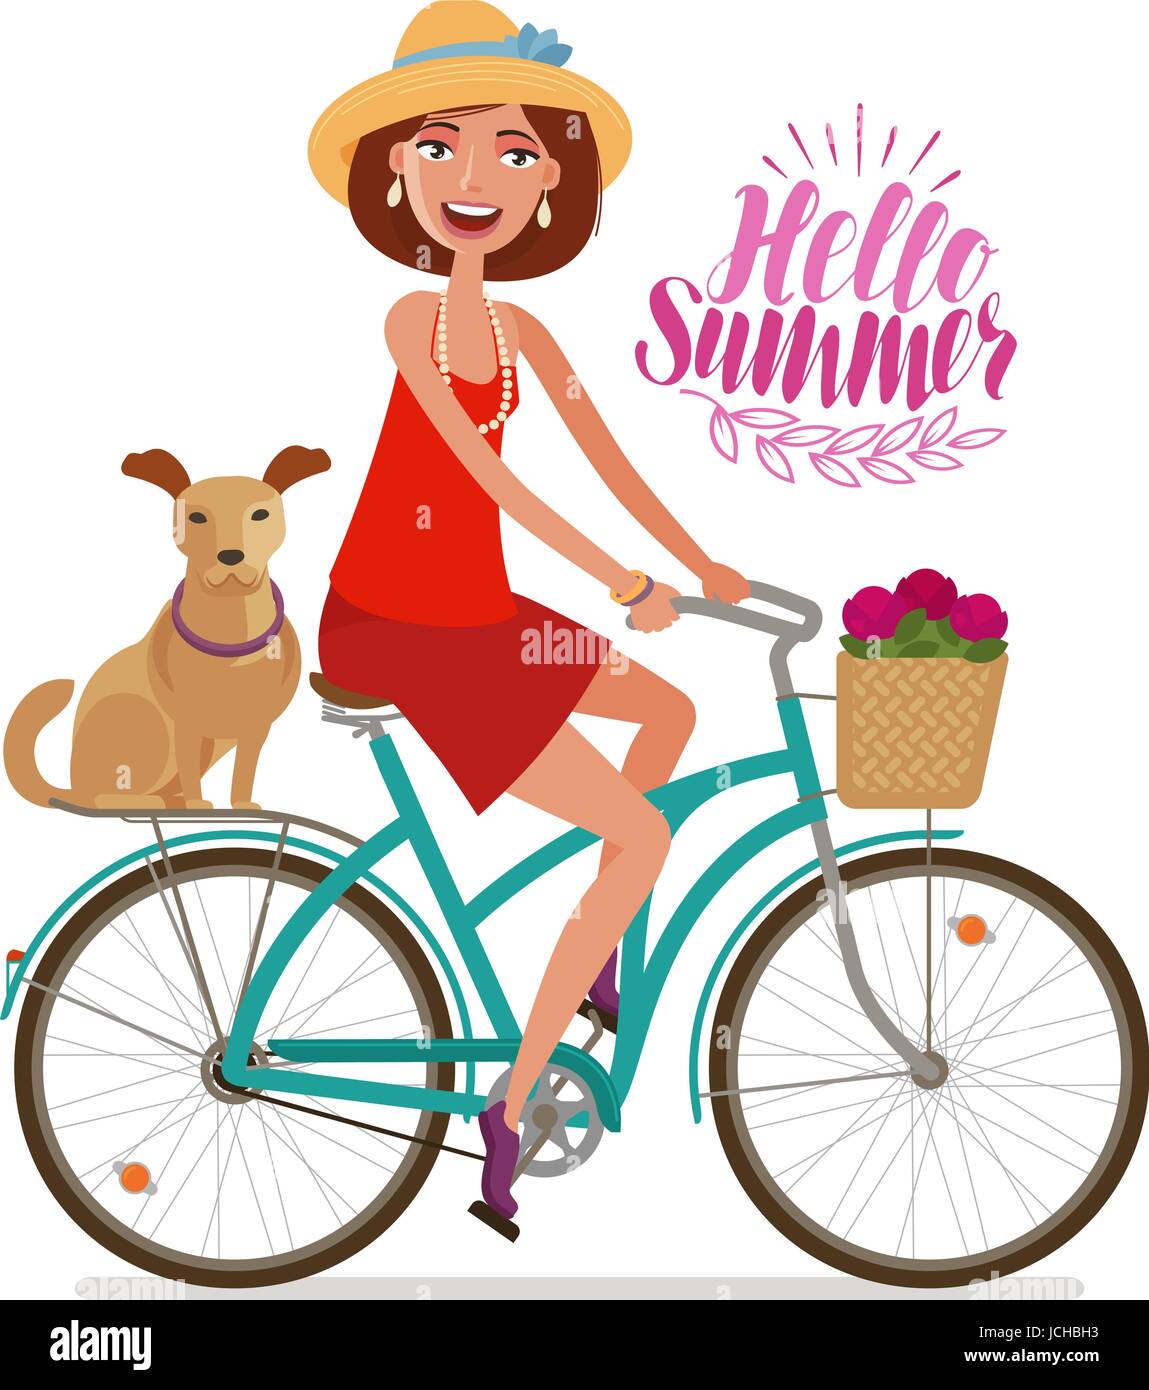 Schönes Mädchen Fahrrad. Perfektes Wochenende, Urlaub, Reise-Ikone. Cartoon-Vektor-illustration Stock Vektor